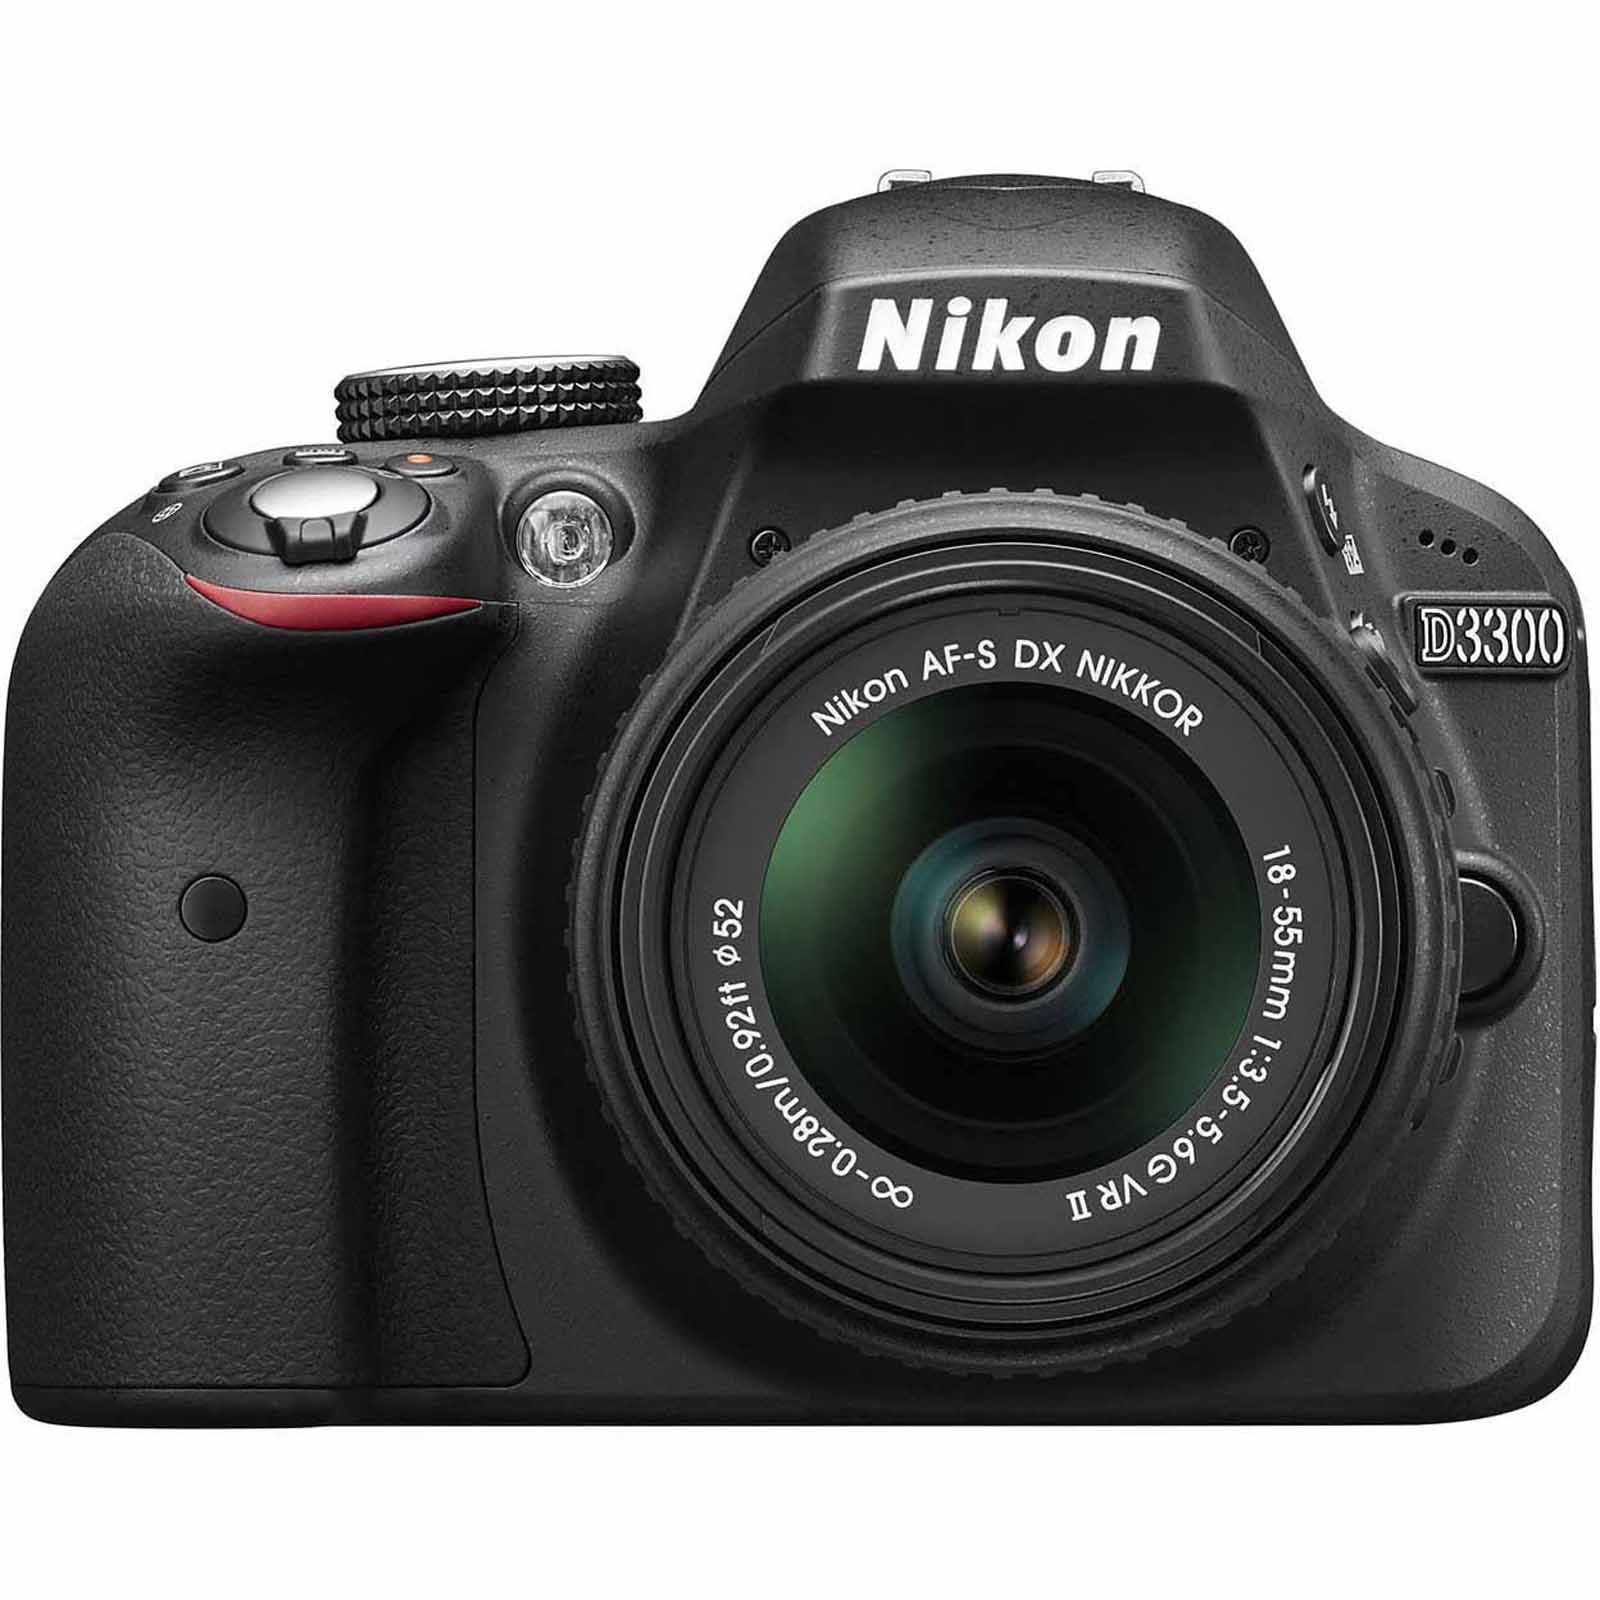 24.2-Megapixel D3300 Digital SLR Camera with 18-55mm Lens